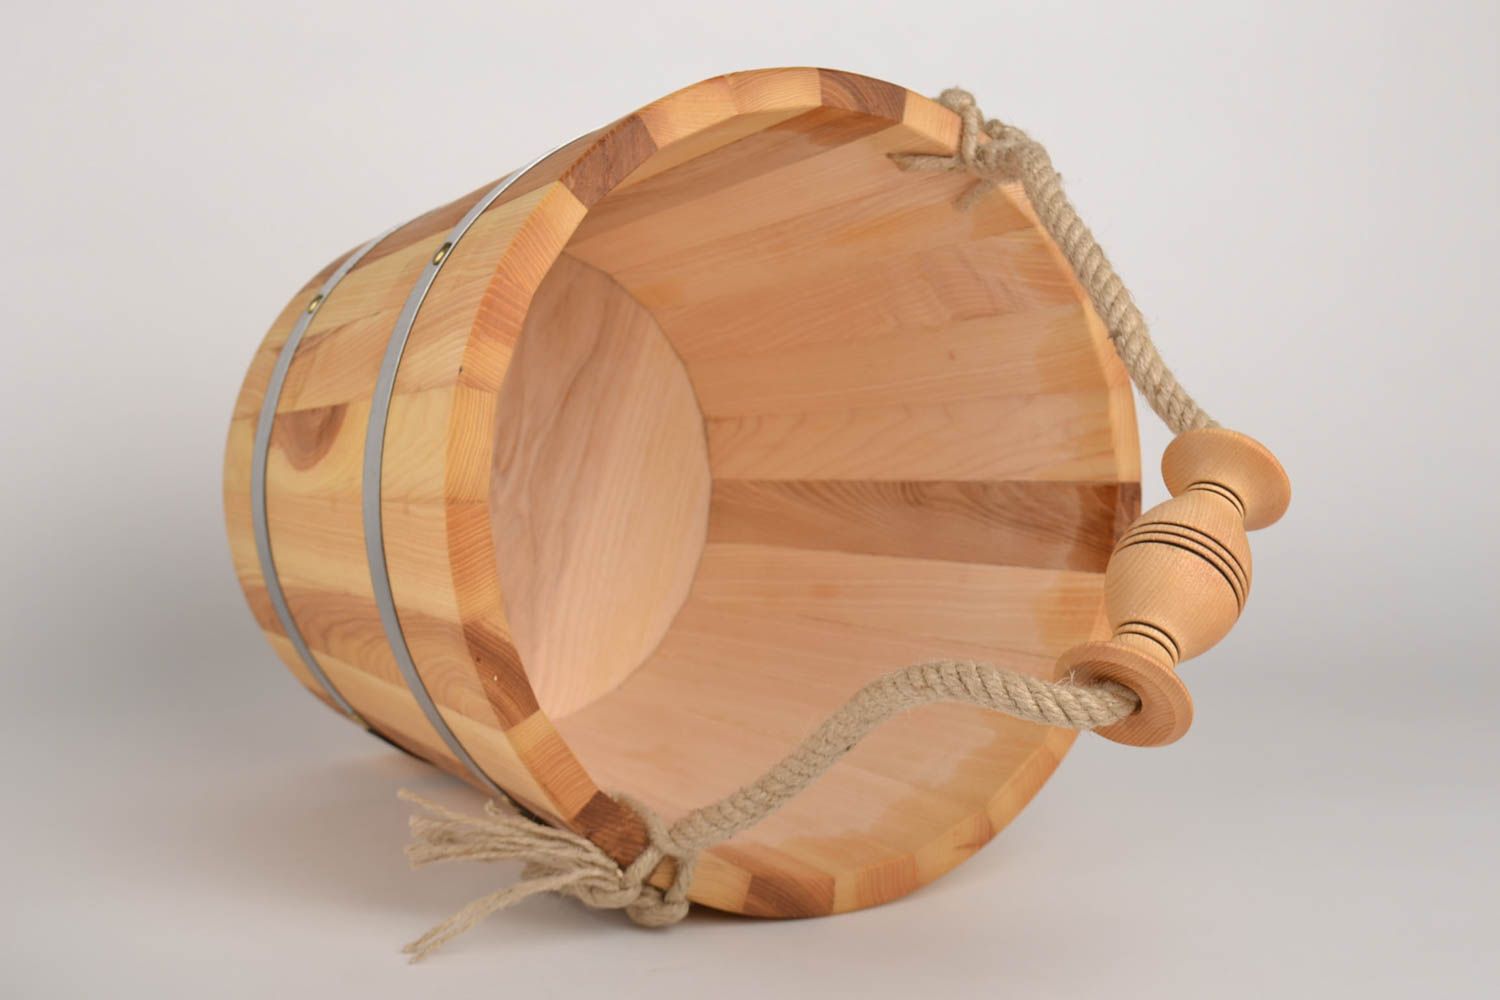 Handmade bucket made of wood sauna accessories sauna bucket present for men photo 4